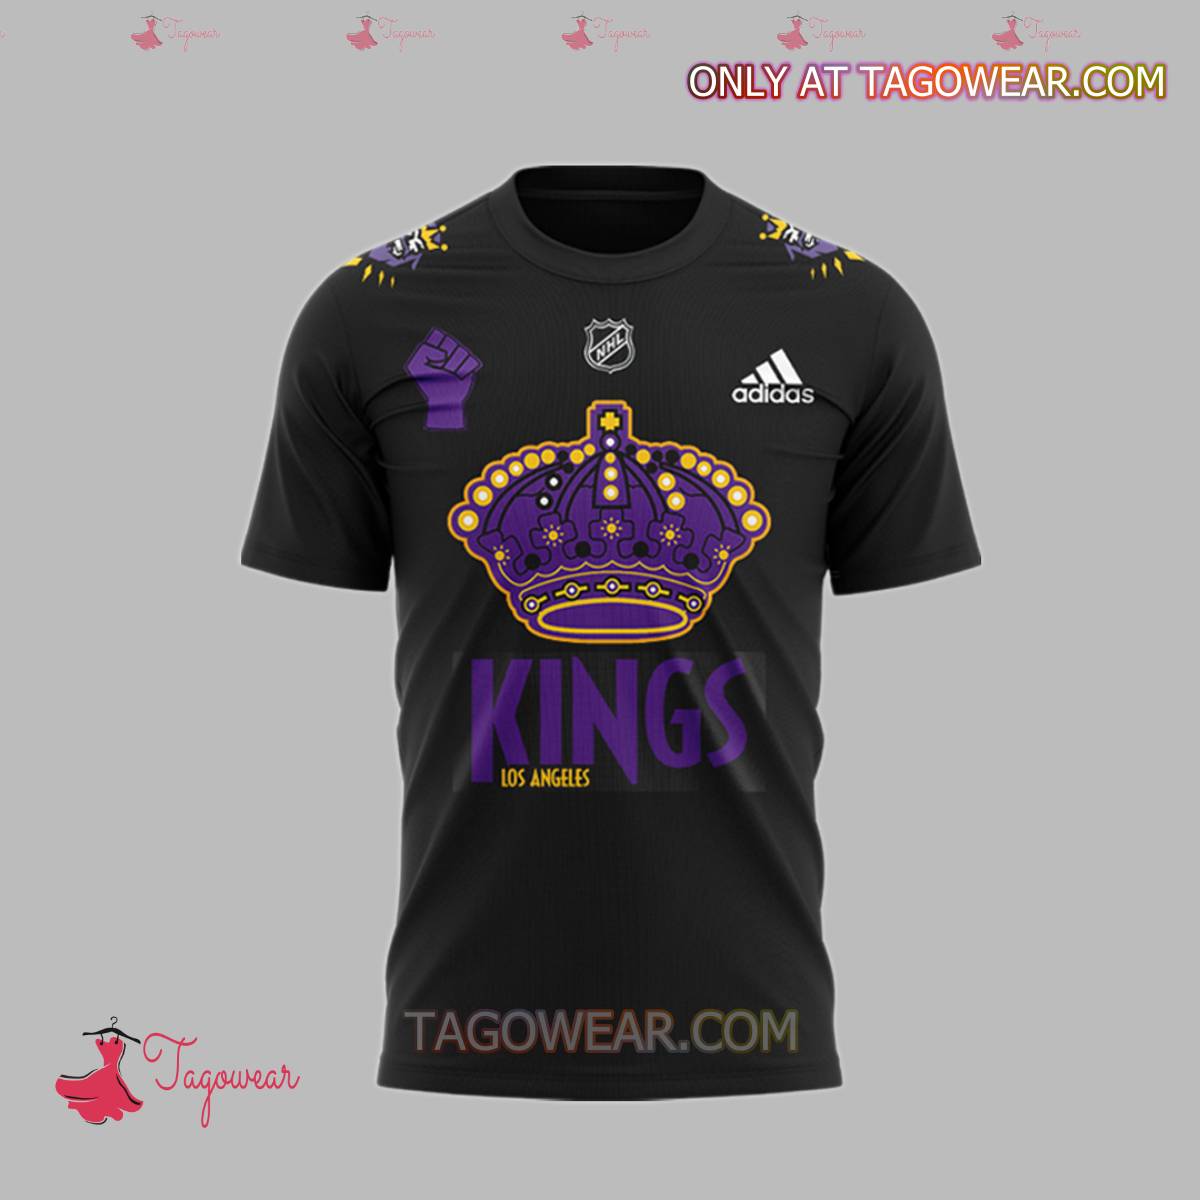 Los Angeles Kings Hockey Team Shirt a